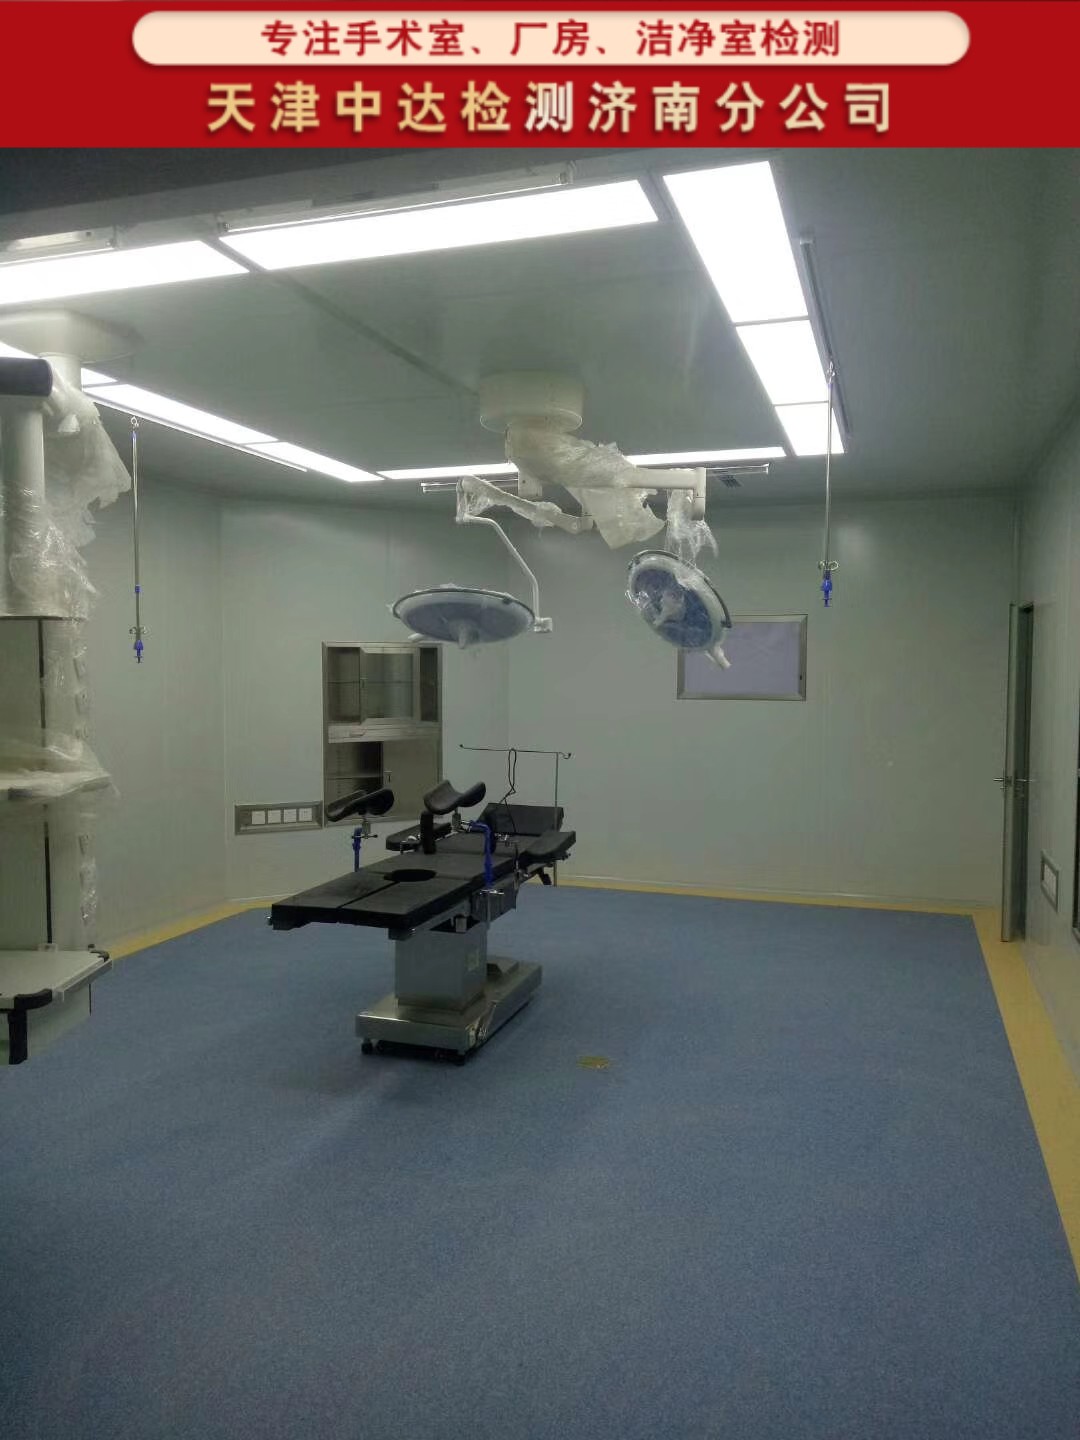 日照岚山区医院洁净手术室空气检测中心-天津中达检测济南分公司